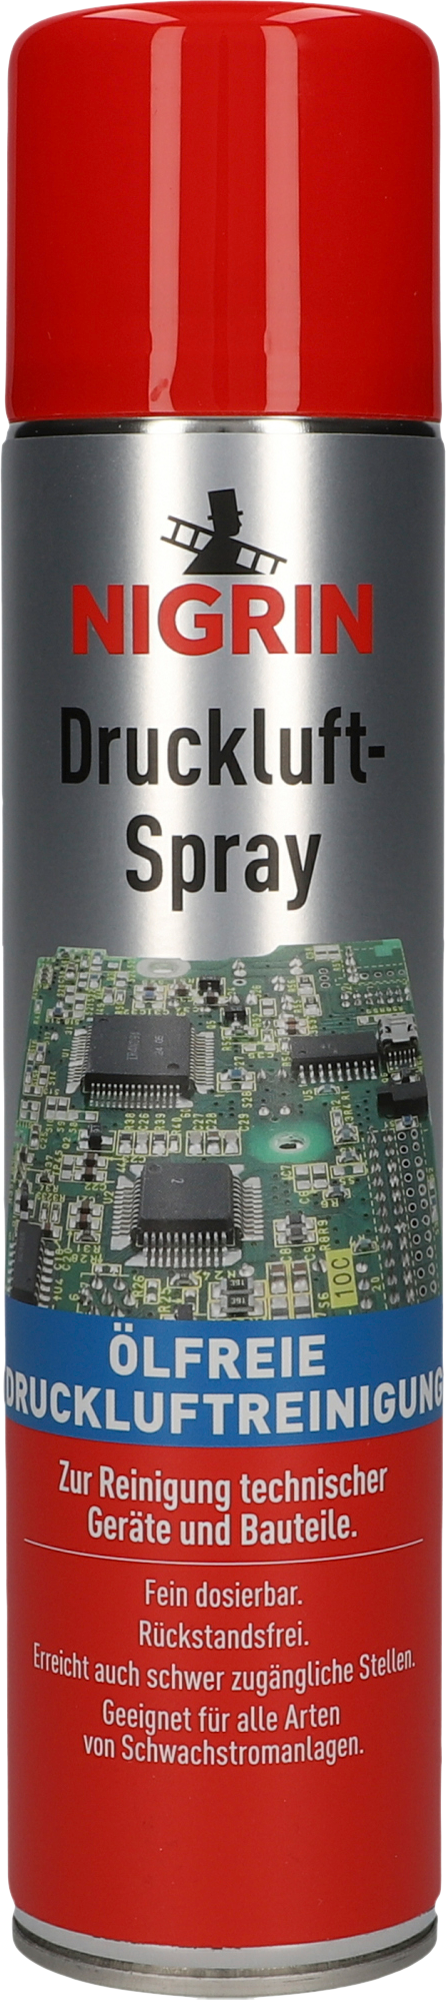 Nigrin Druckluft-Spray 400ml